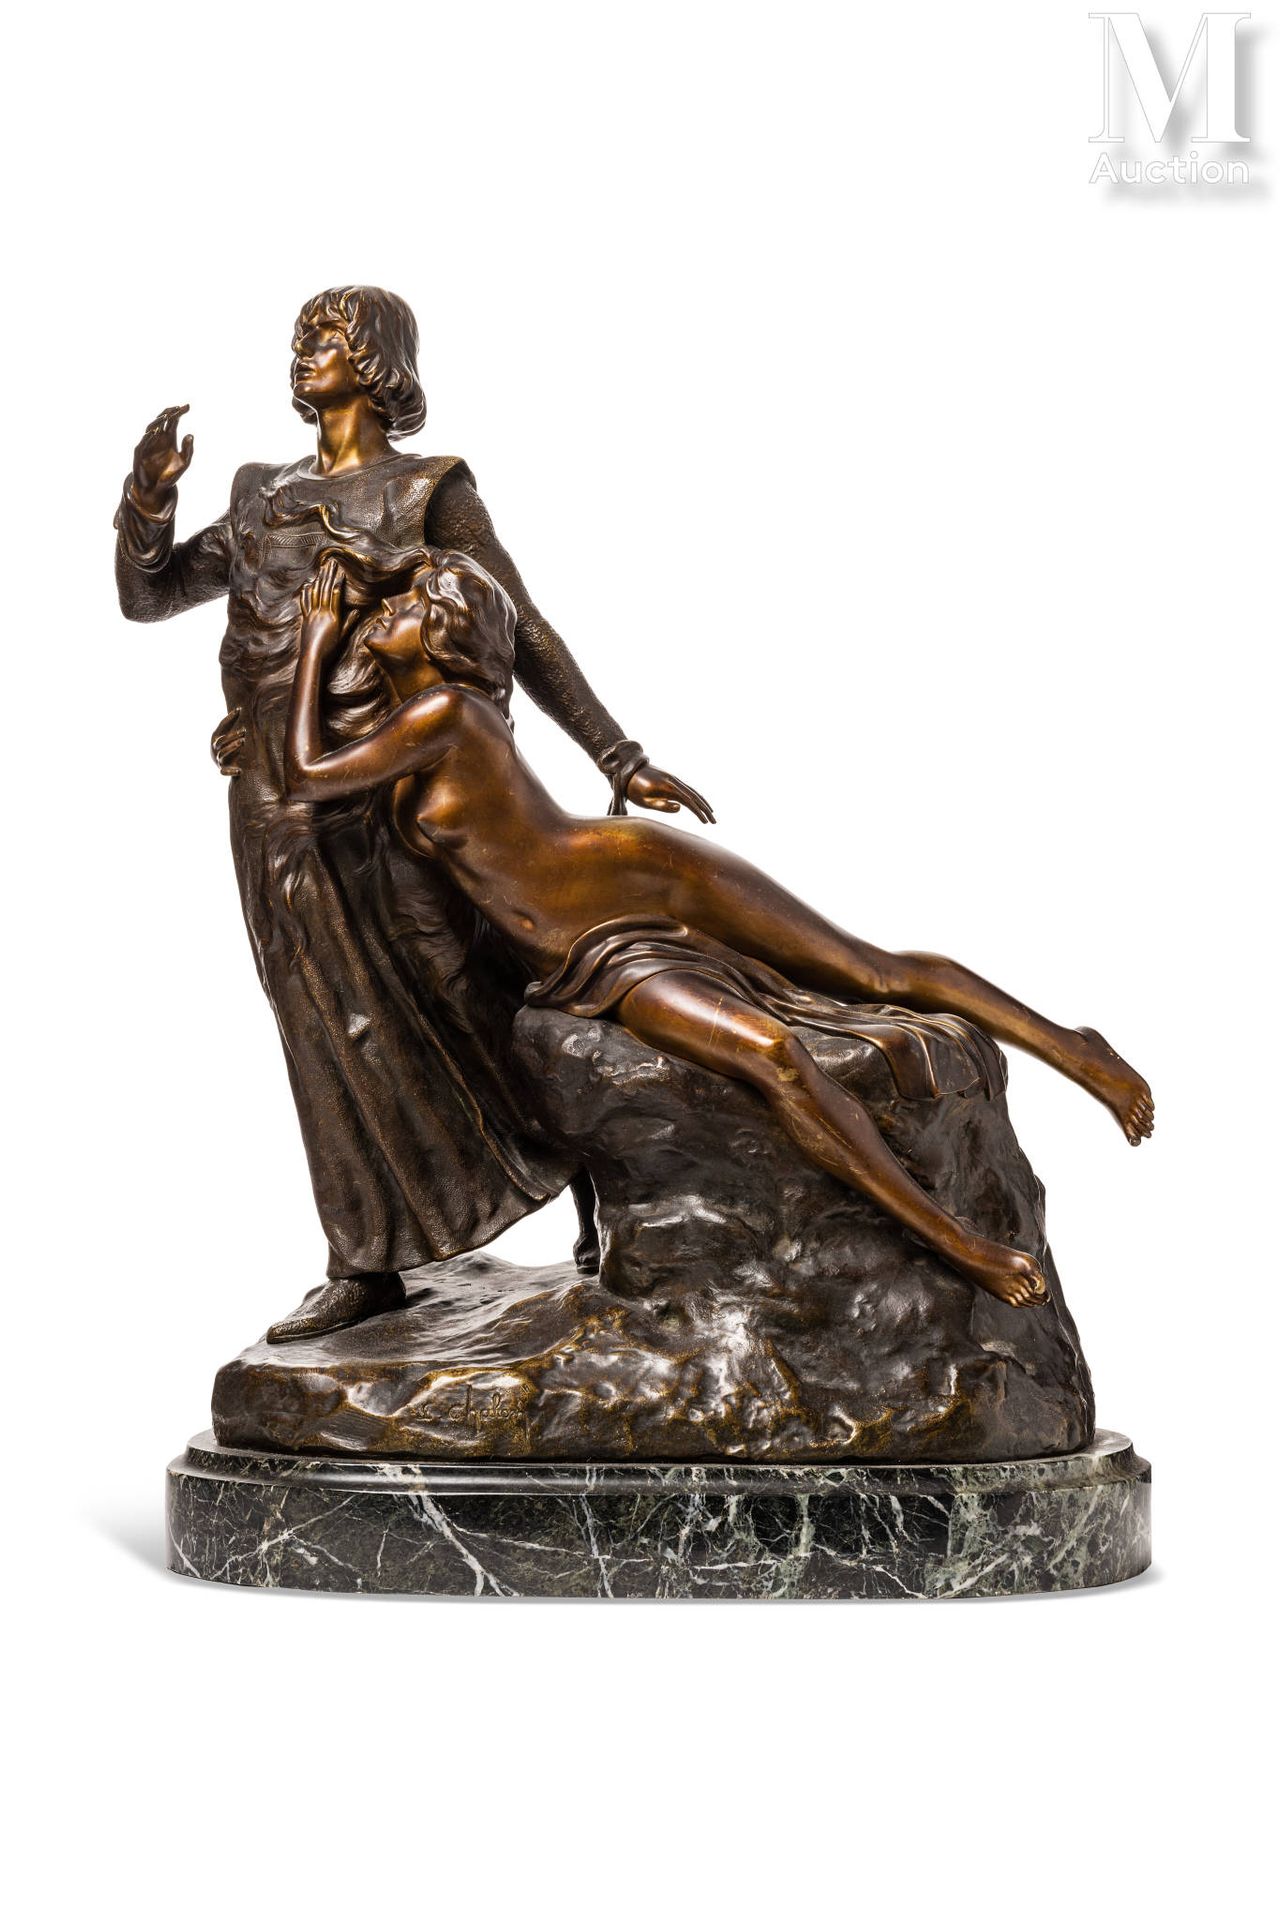 Louis CHALON (1866 - 1940 ) "Tannhäuser"



Bronzeskulptur mit goldbrauner Patin&hellip;